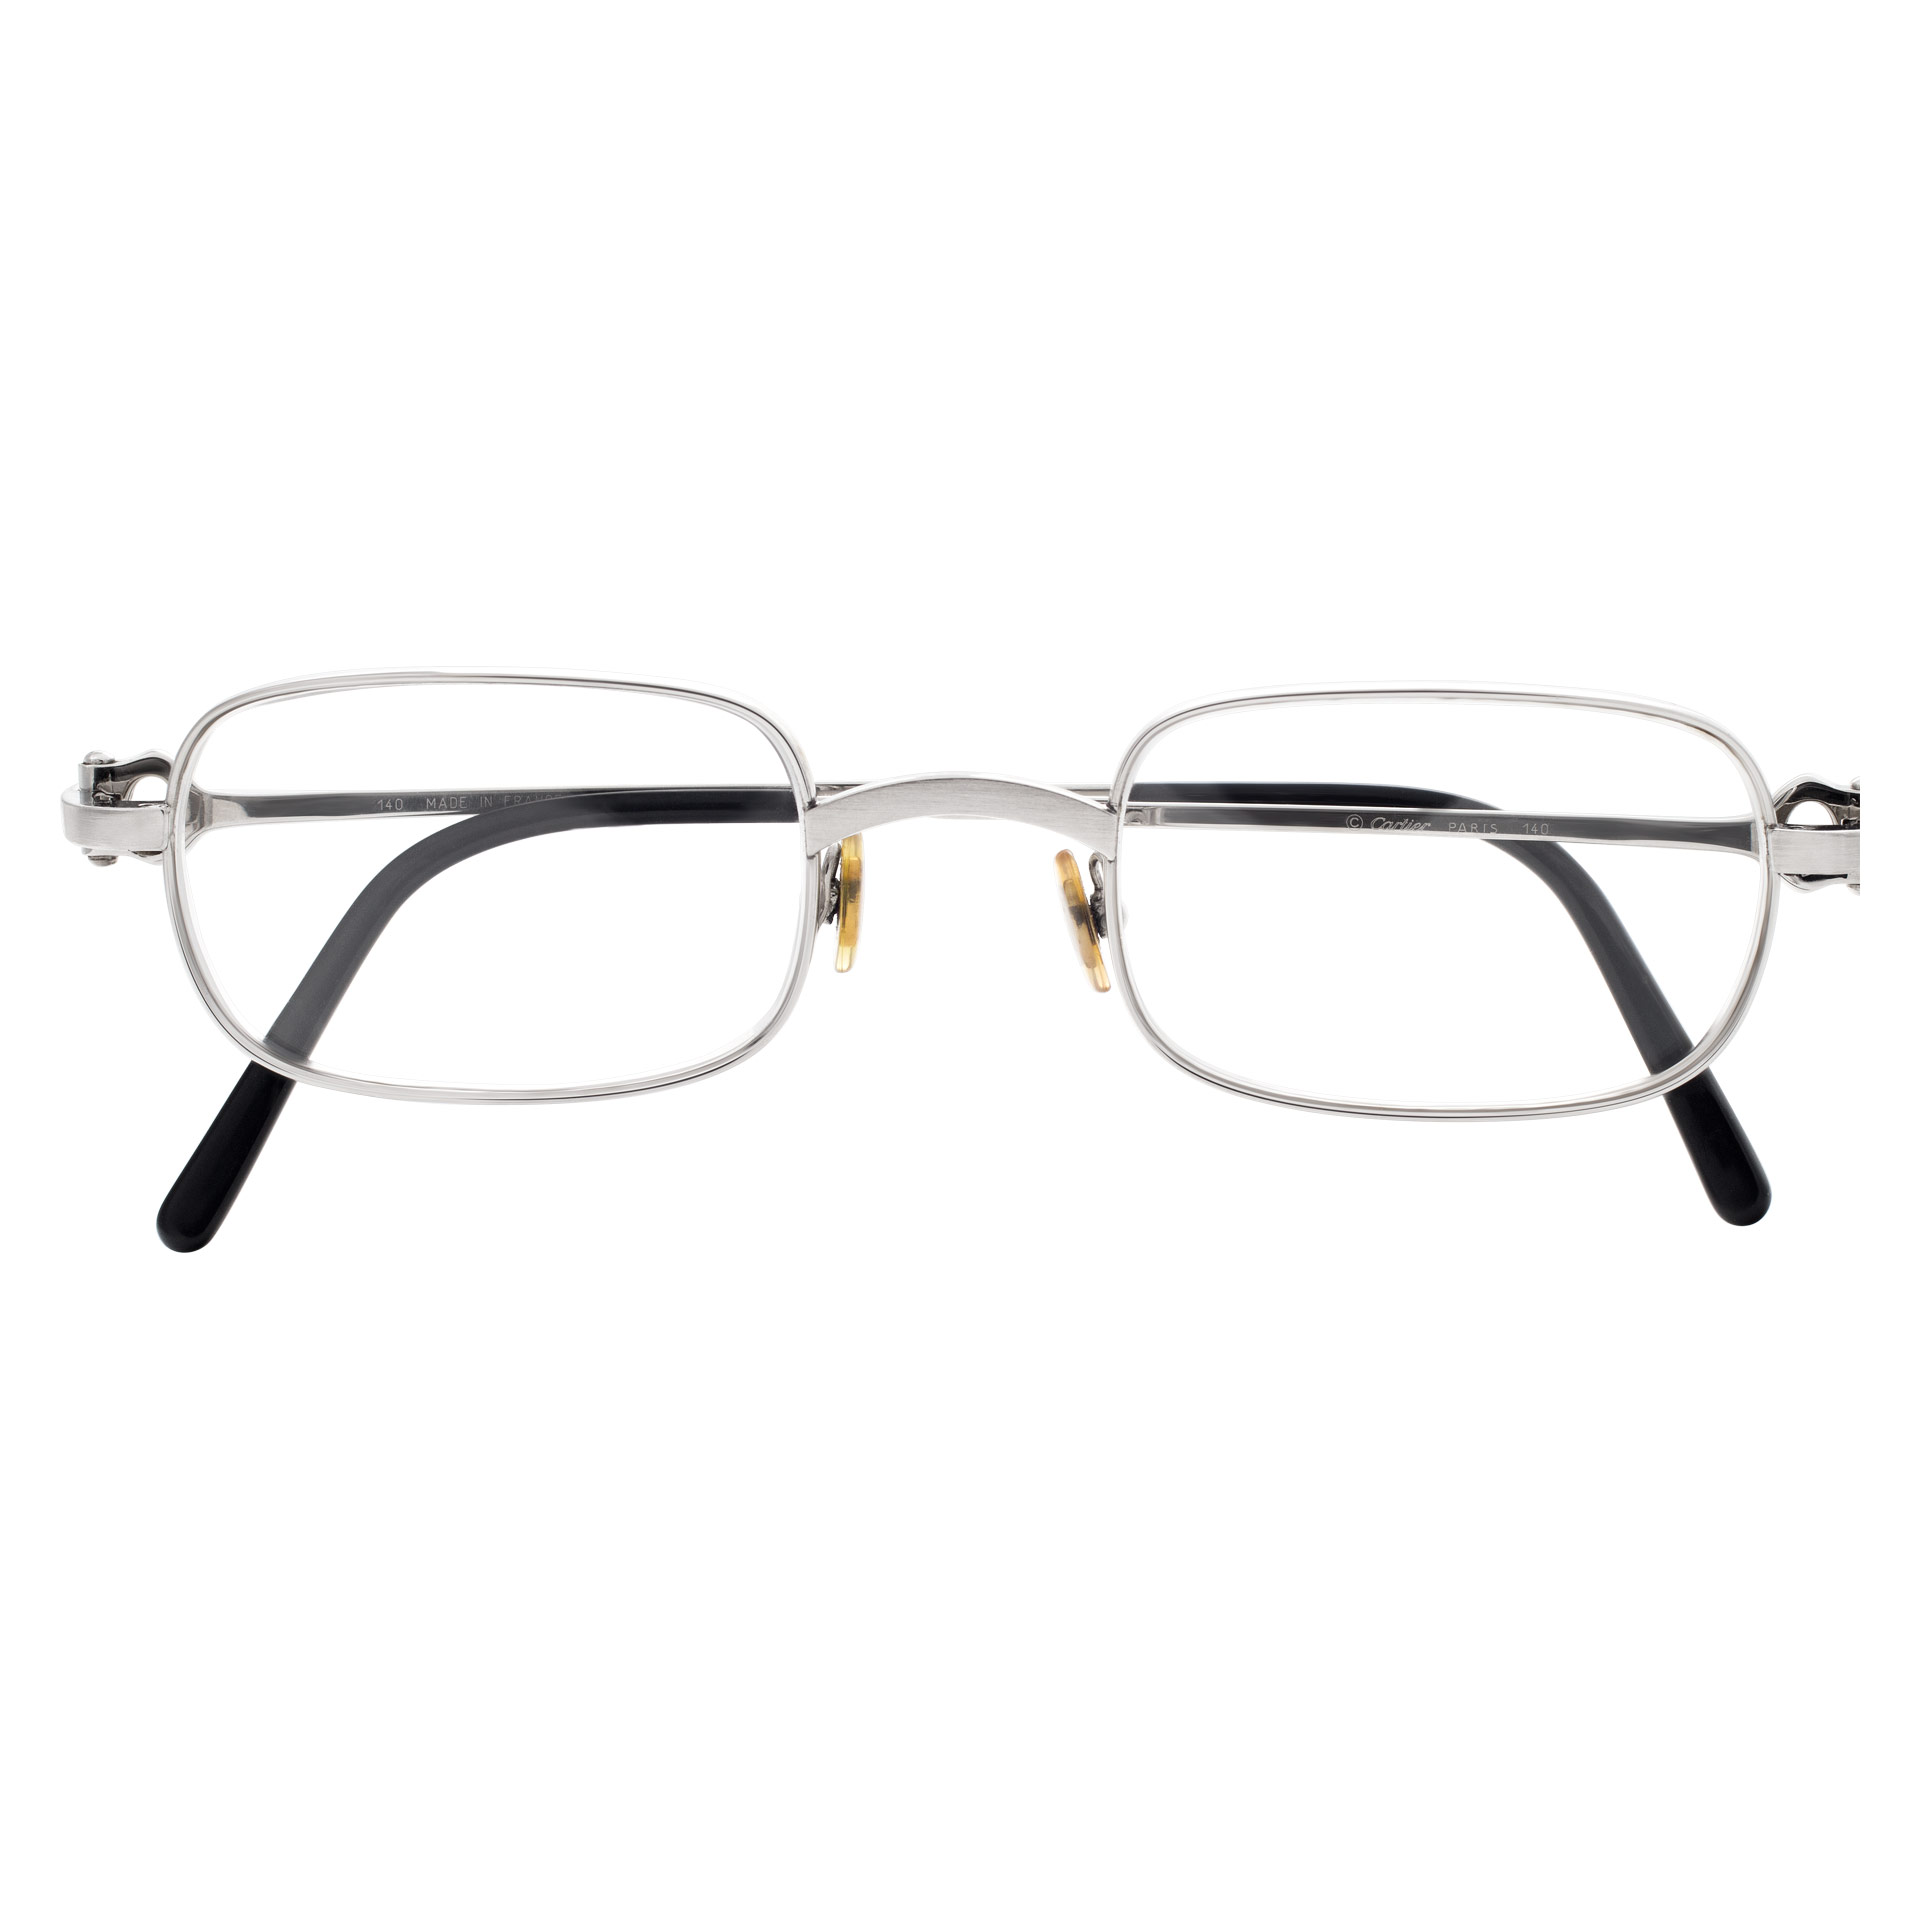 Cartier Bolon model frame glasses in stainless steel image 2